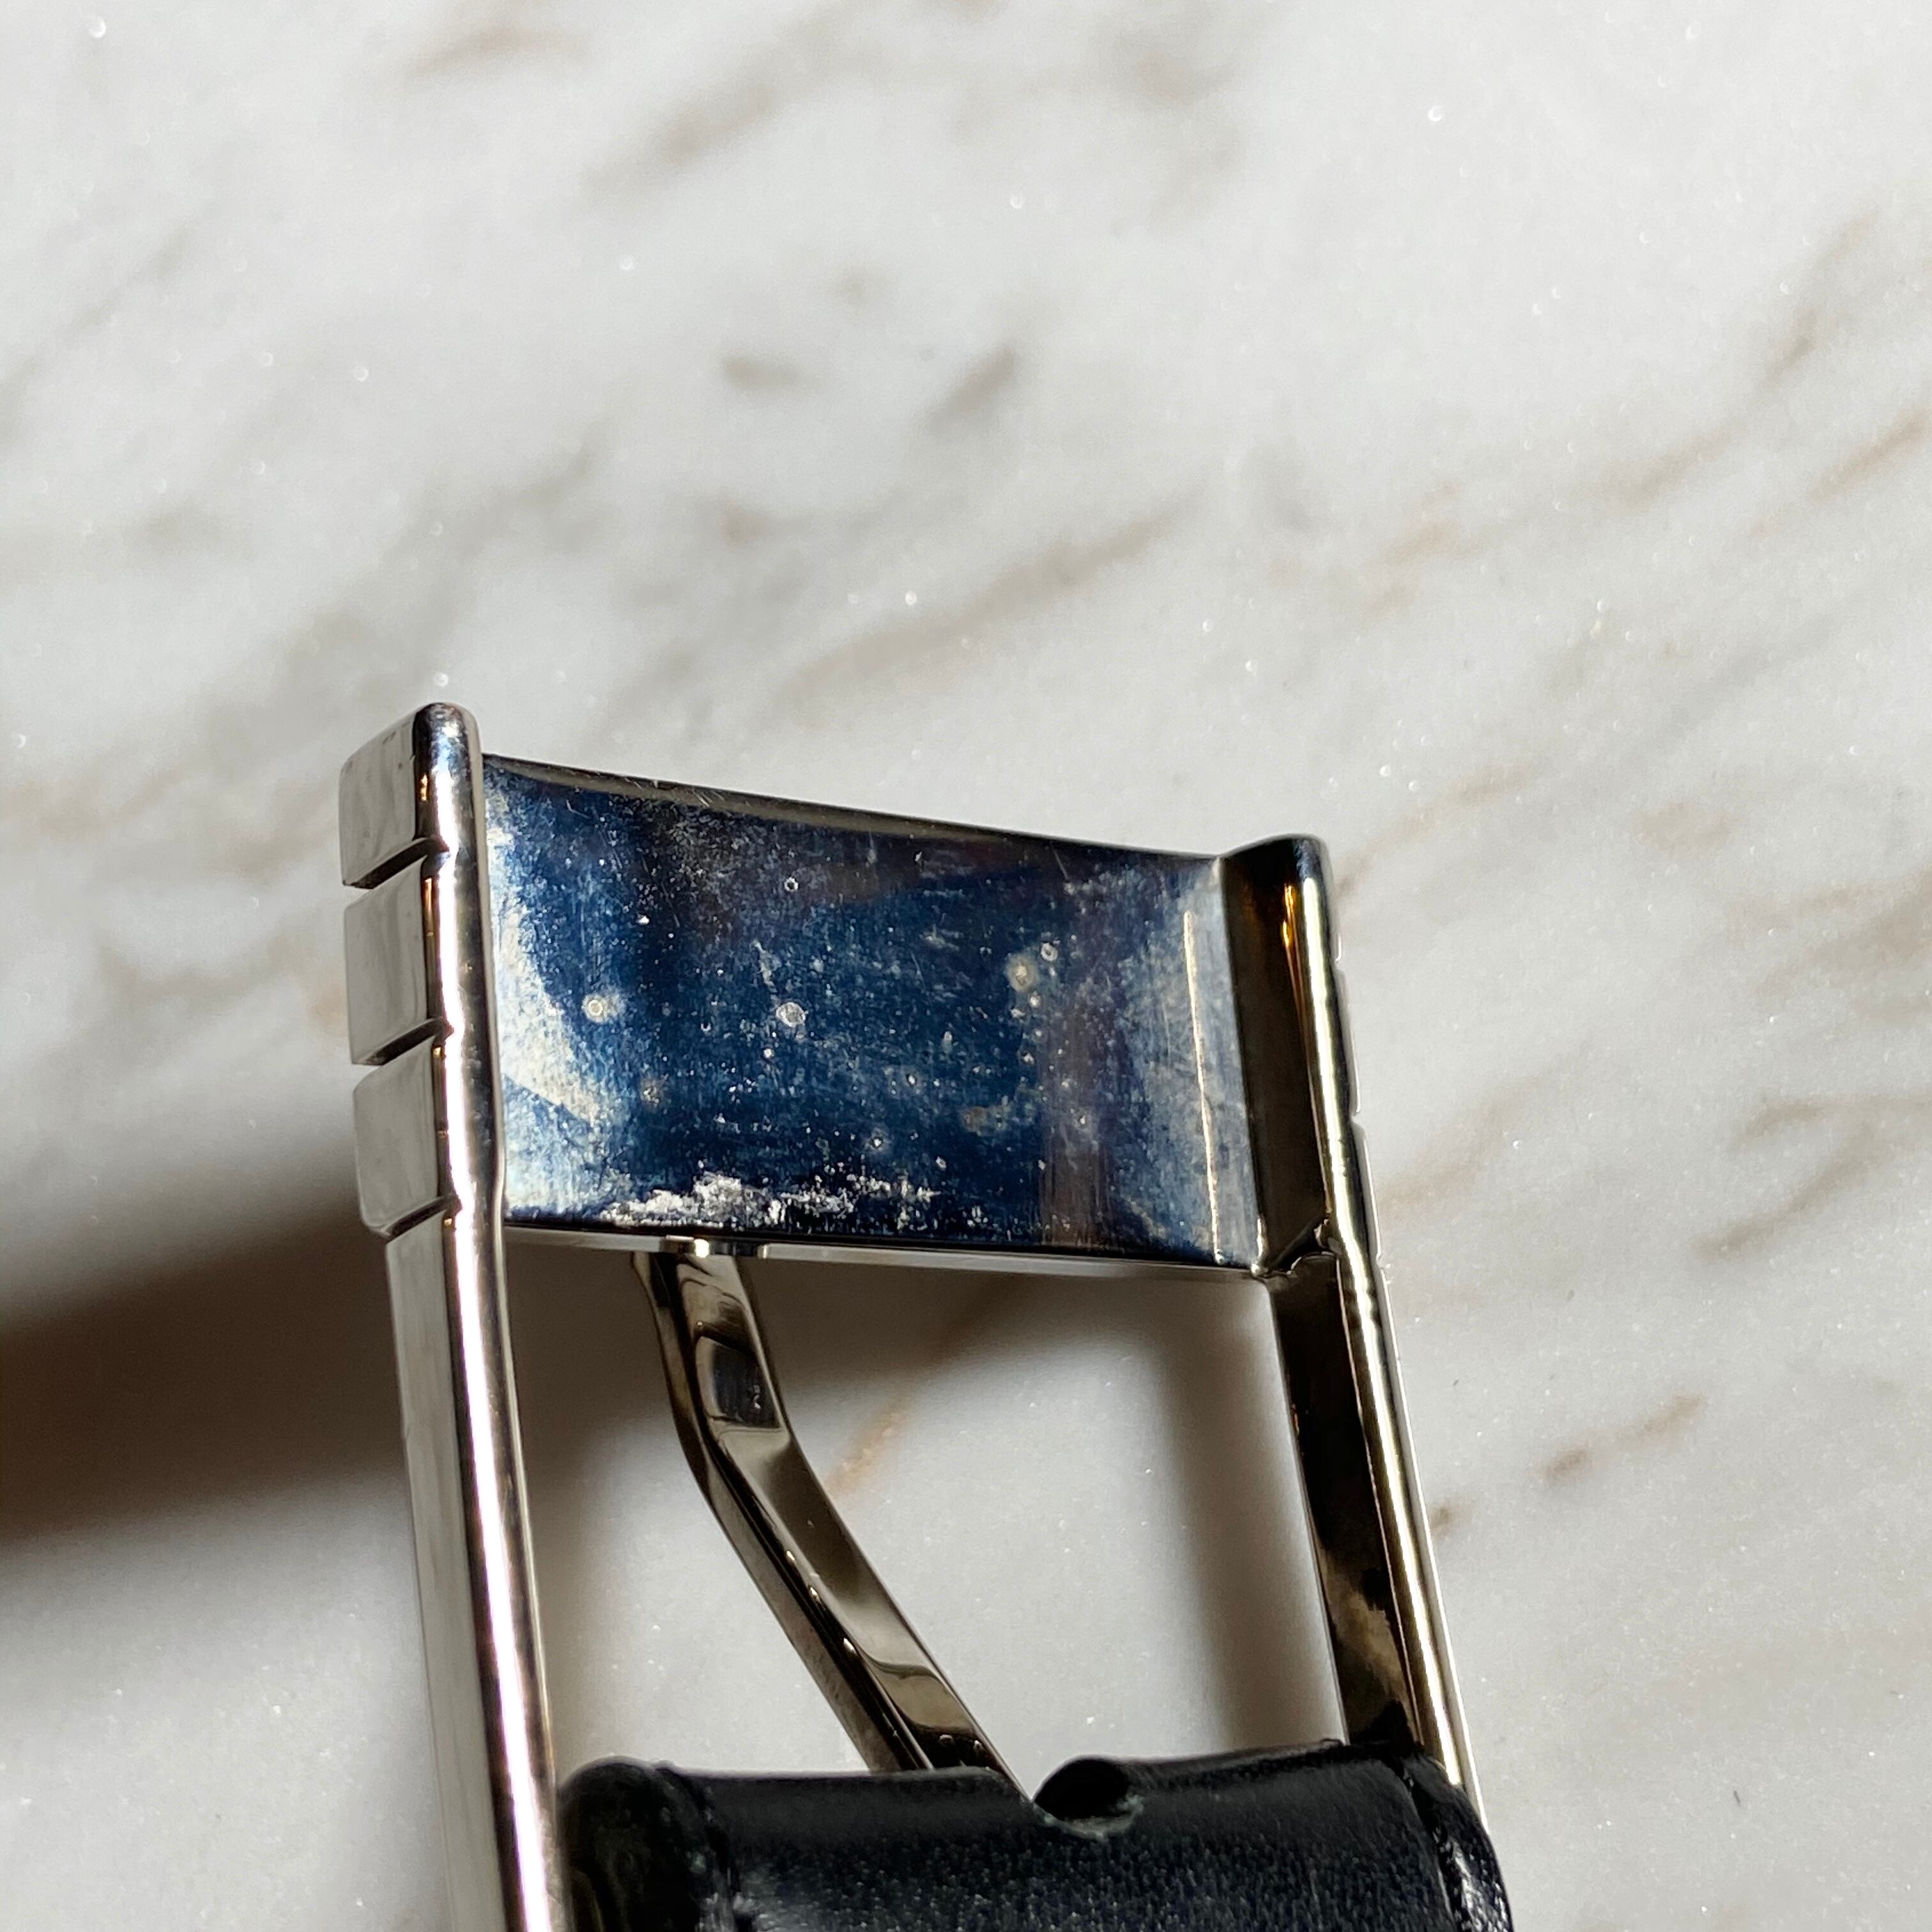 Dior homme design buckle belt